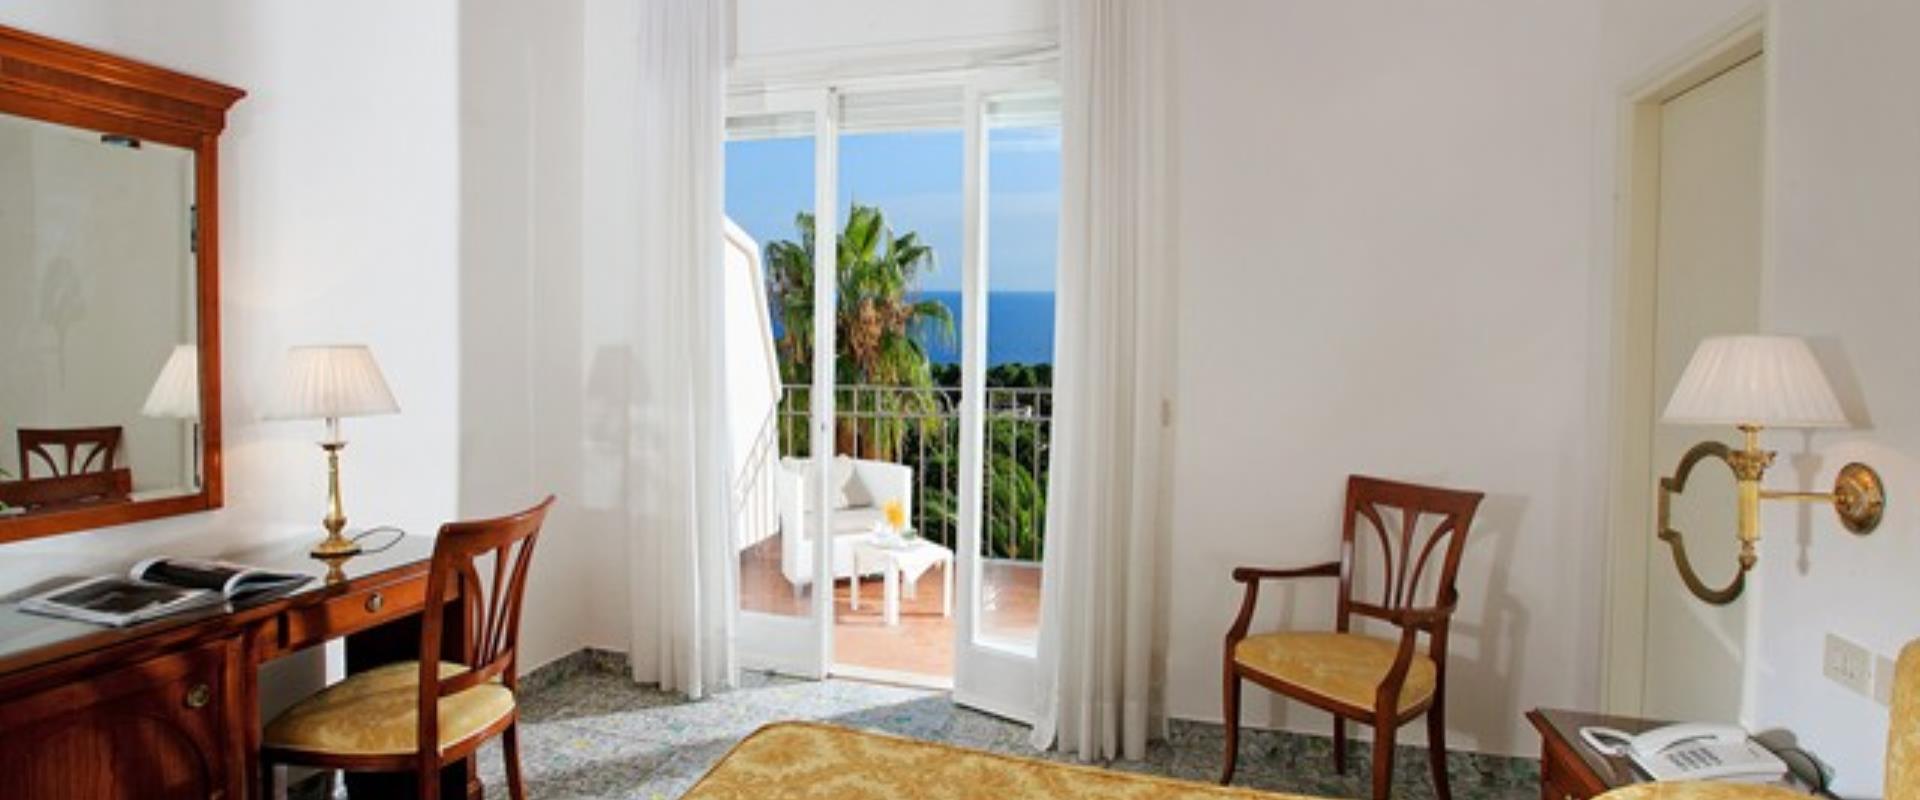 Le panoramiche stanze del  Hotel Syrene a Capri.